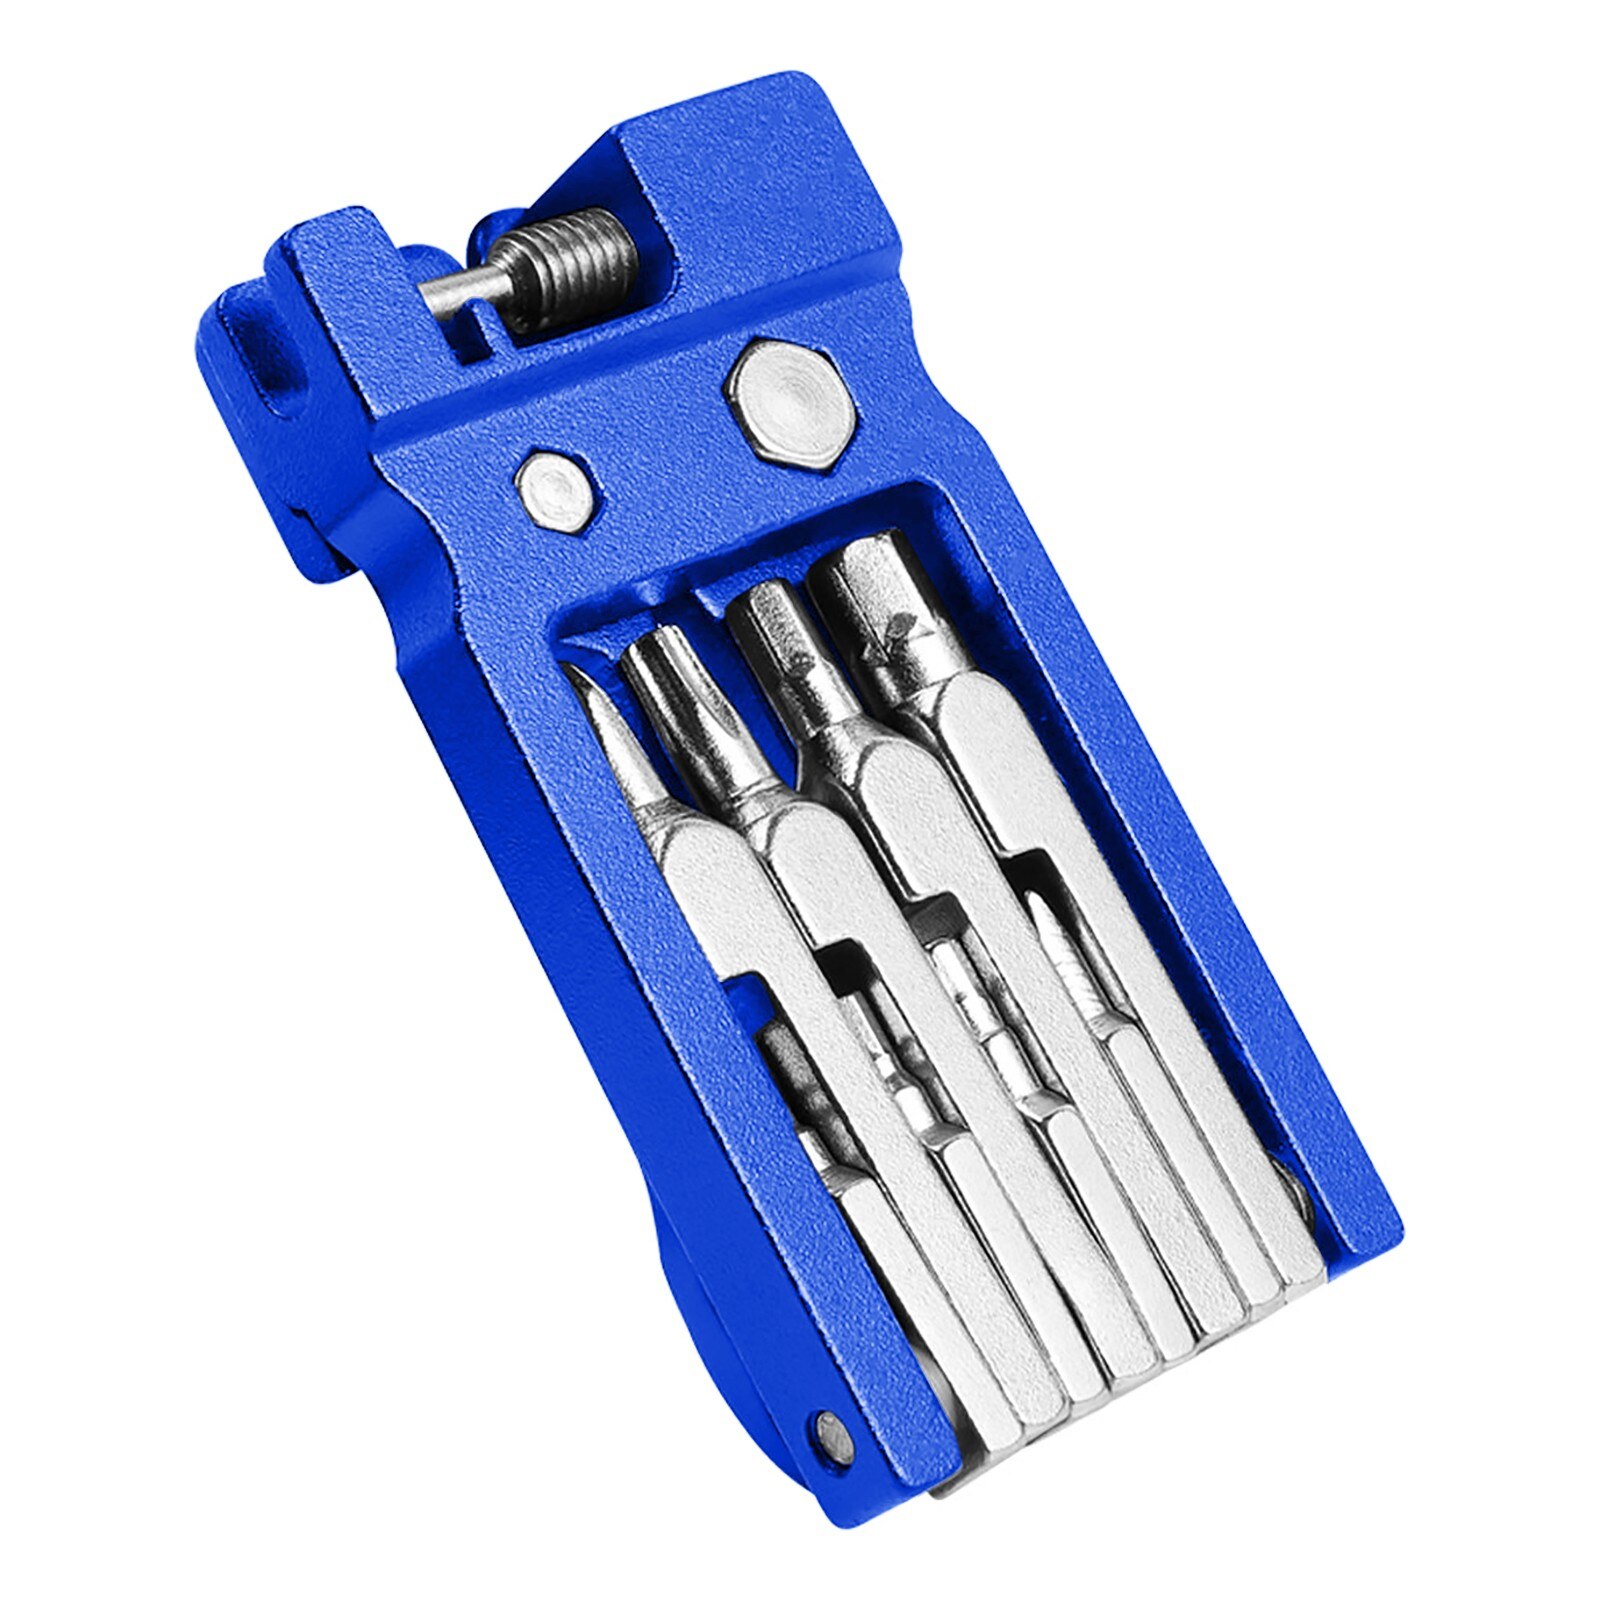 Draagbare Fiets Reparatie Tools 20-In-1 Multifunctionele Cyclus Fiets Reparatie Kit Fiets Reparatie Tool Outdoor reparatie Accessoires #20